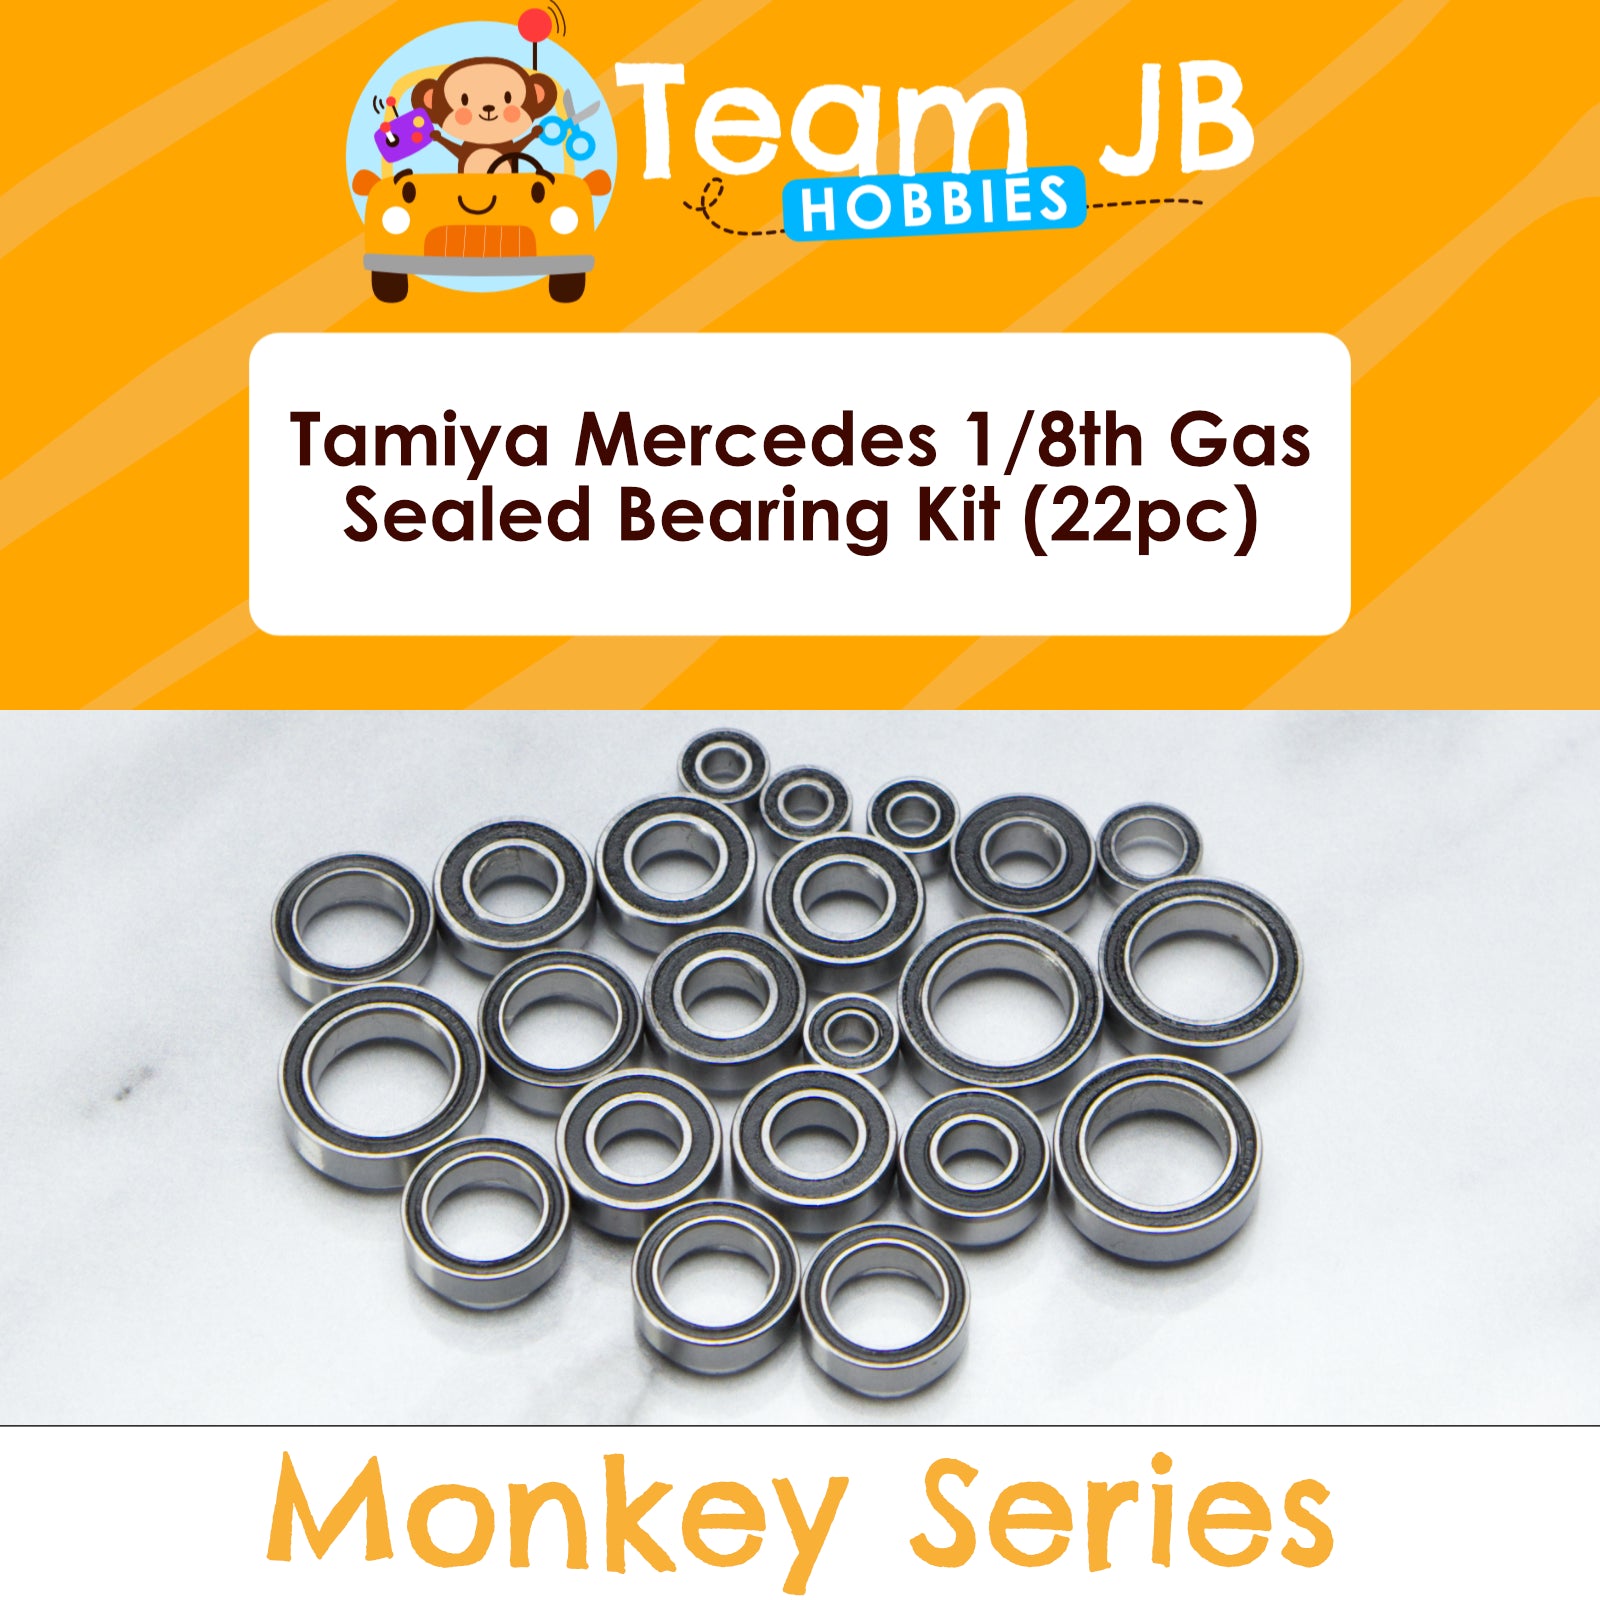 Tamiya Mercedes 1/8th Gas - Sealed Bearing Kit